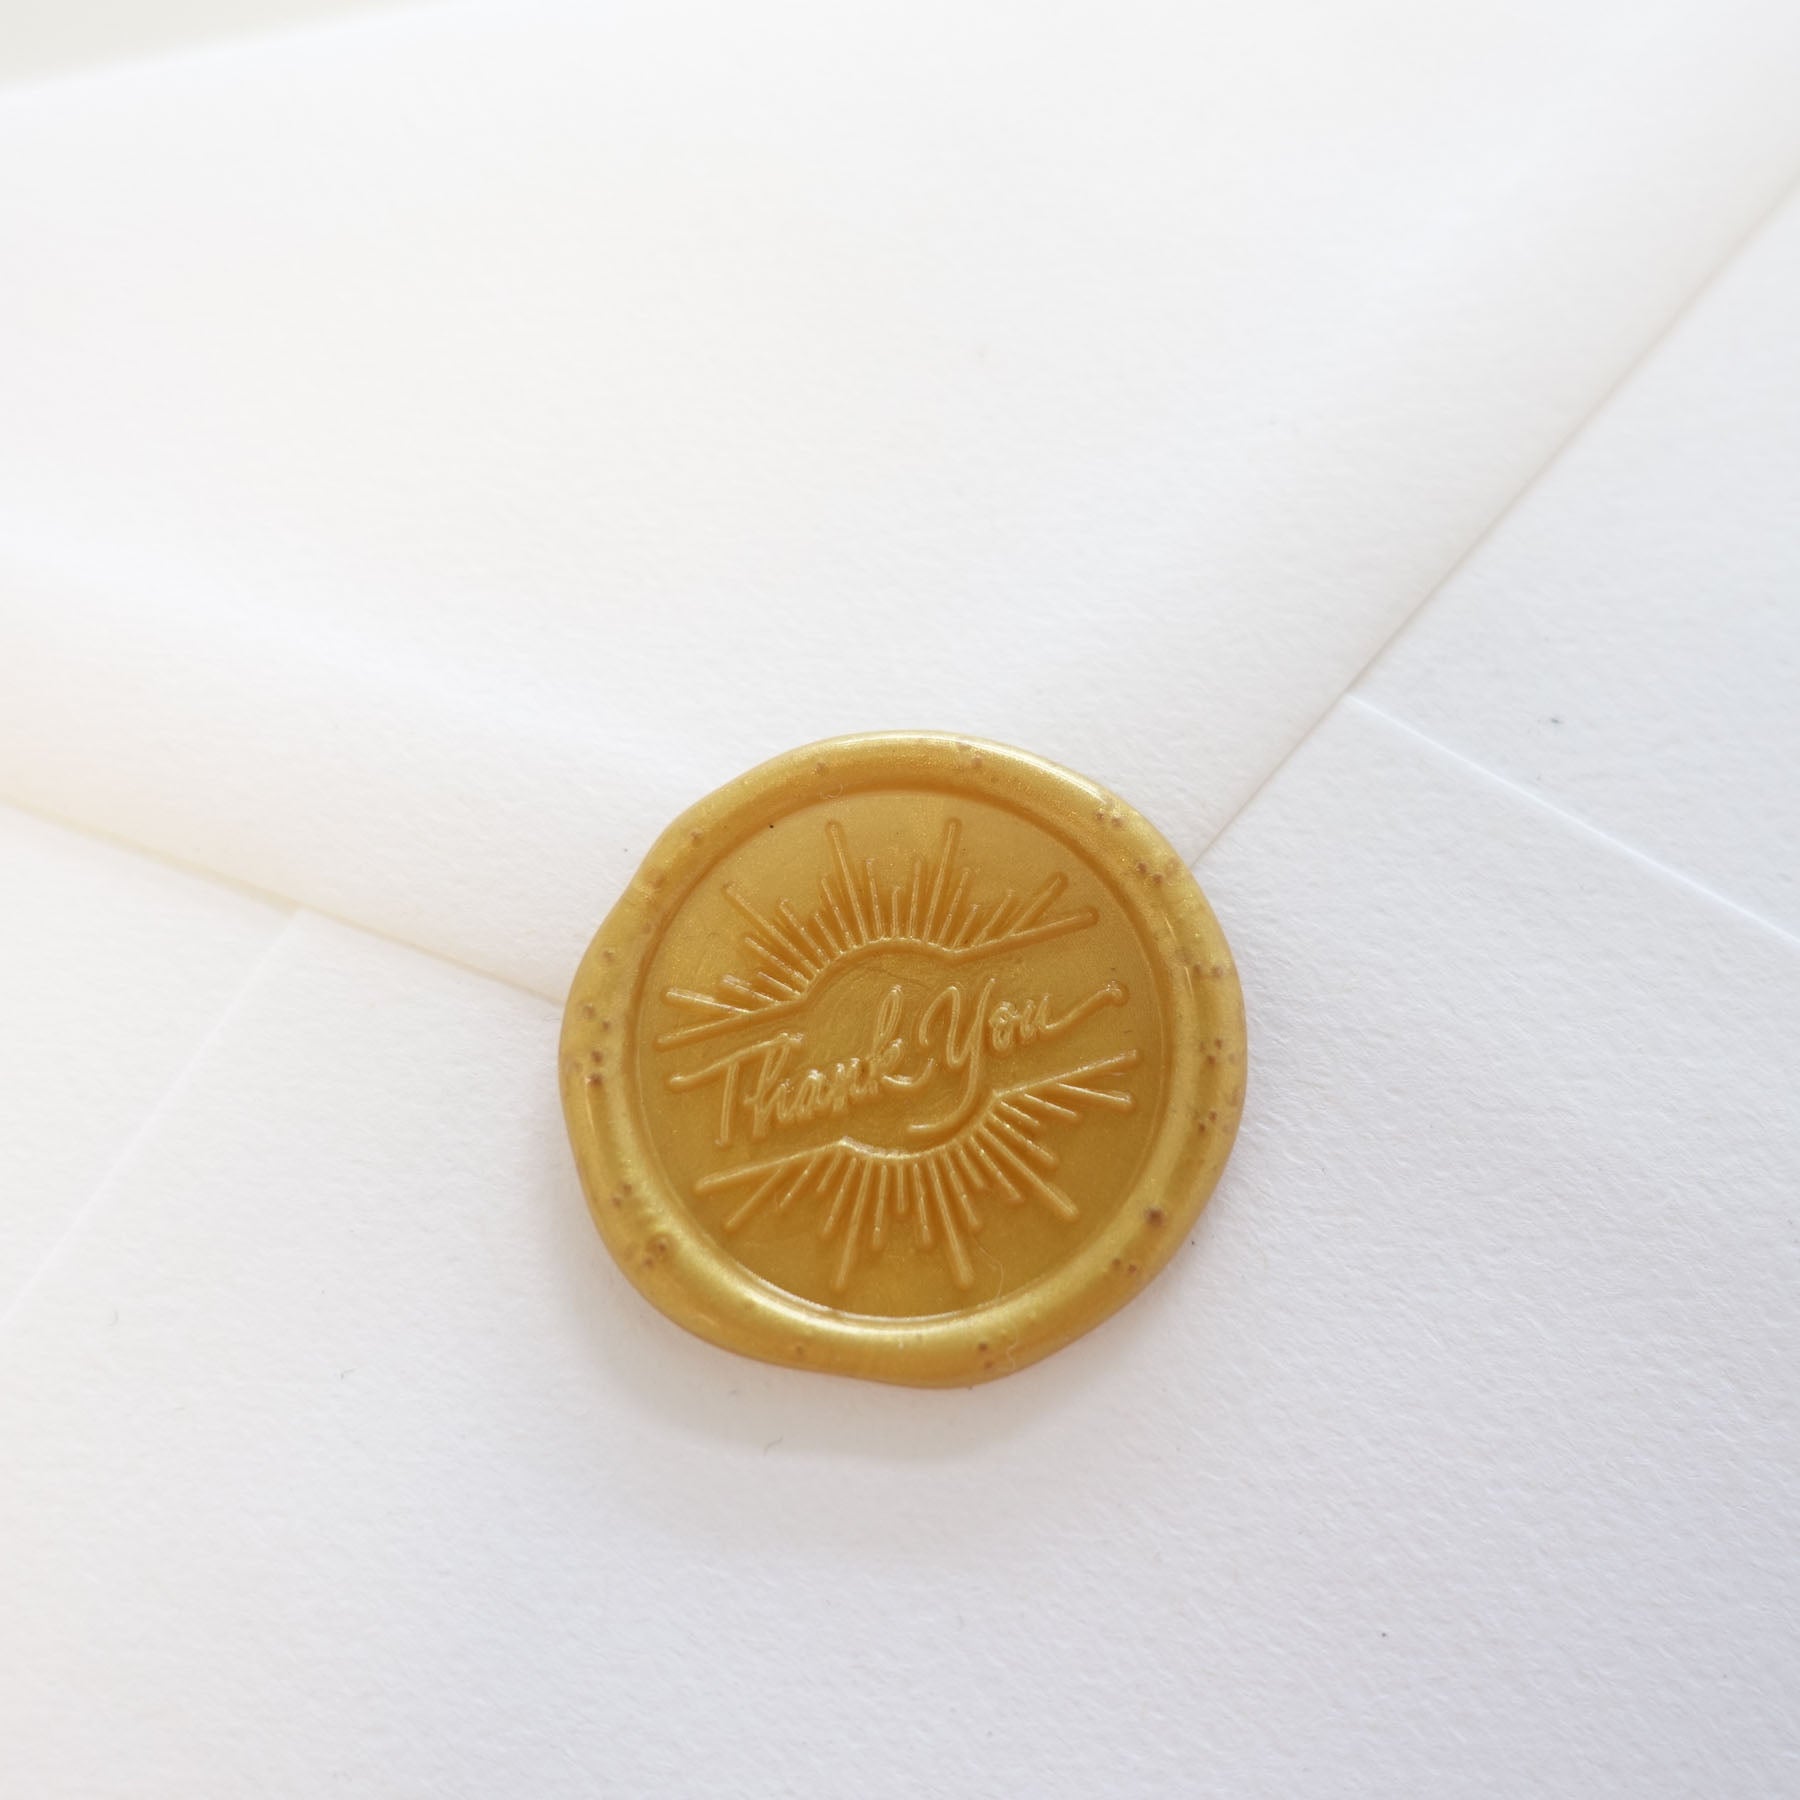 thank you gold wax seal on white envelope fiona ariva australia